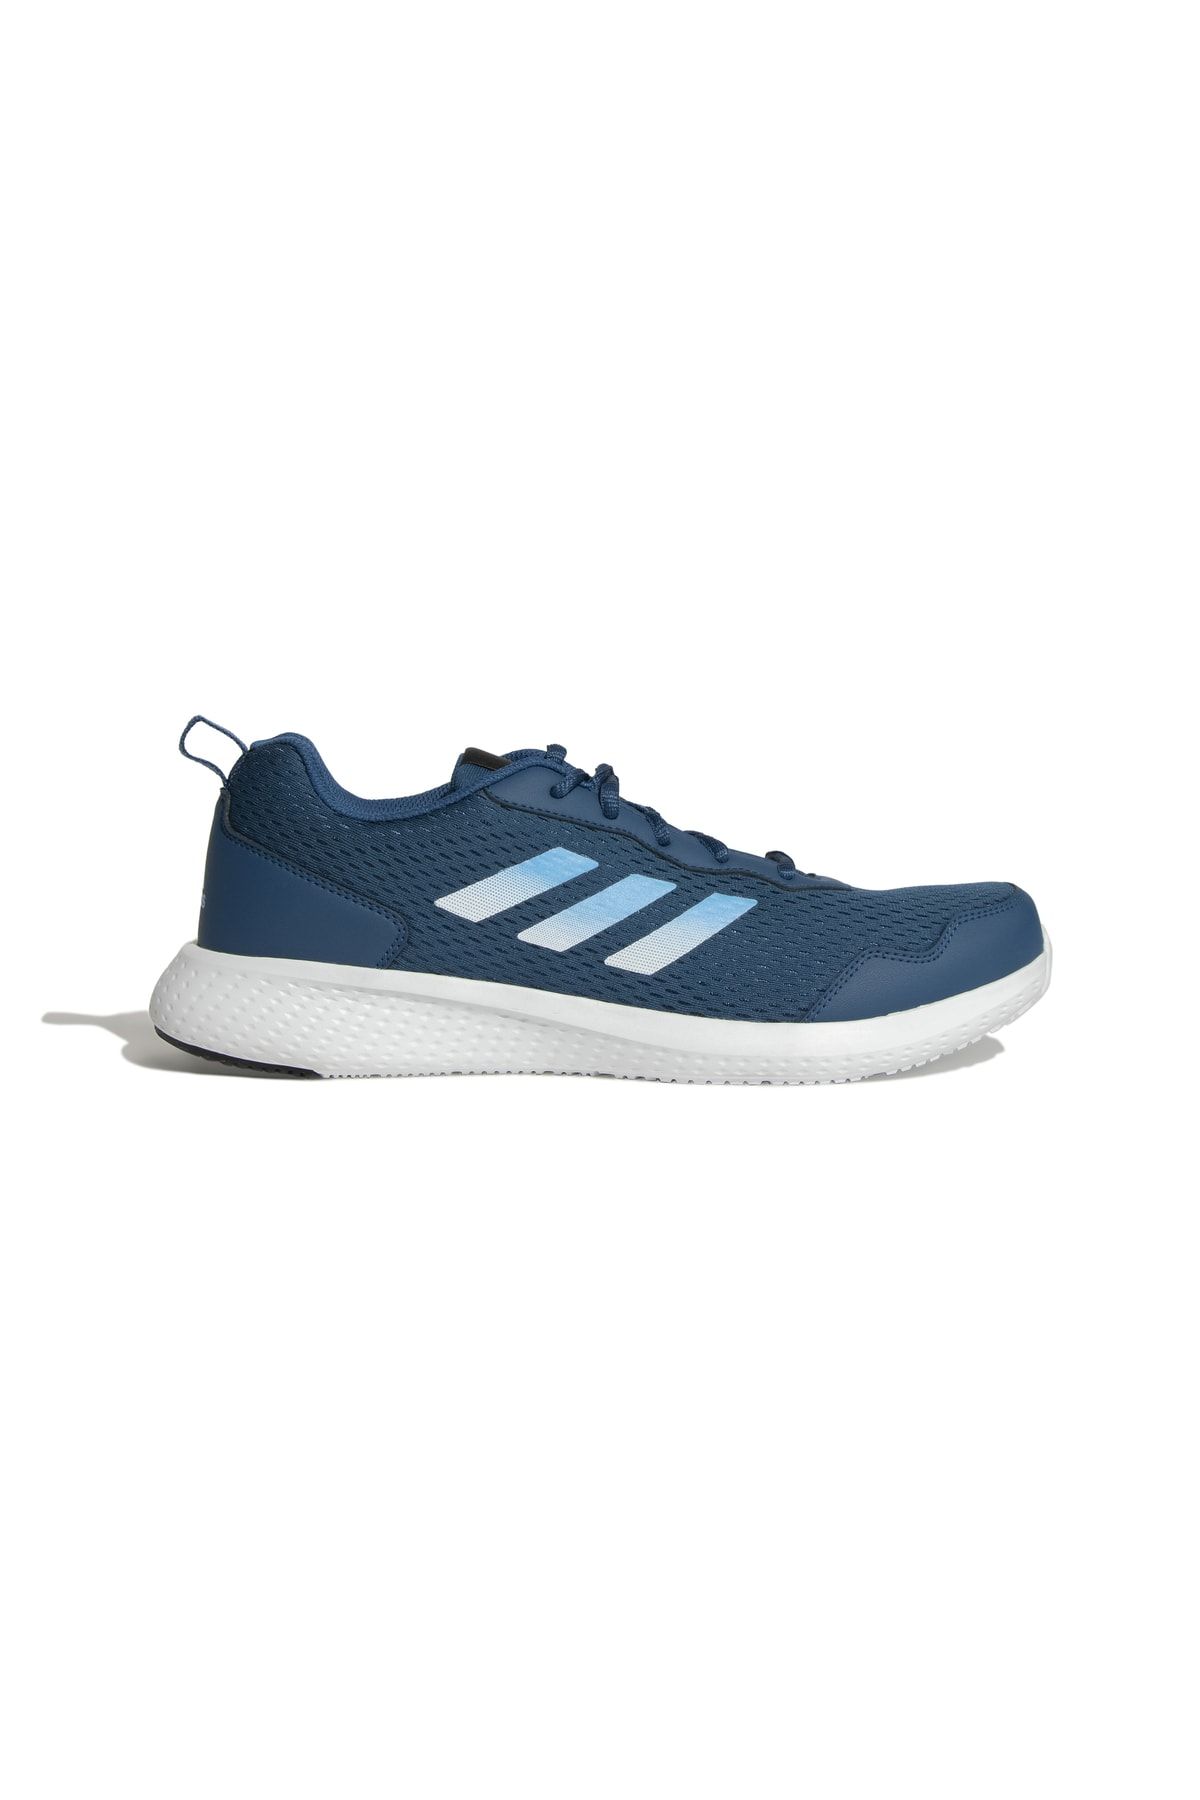 adidas Restound M Mavi Erkek Koşu Ayakkabısı